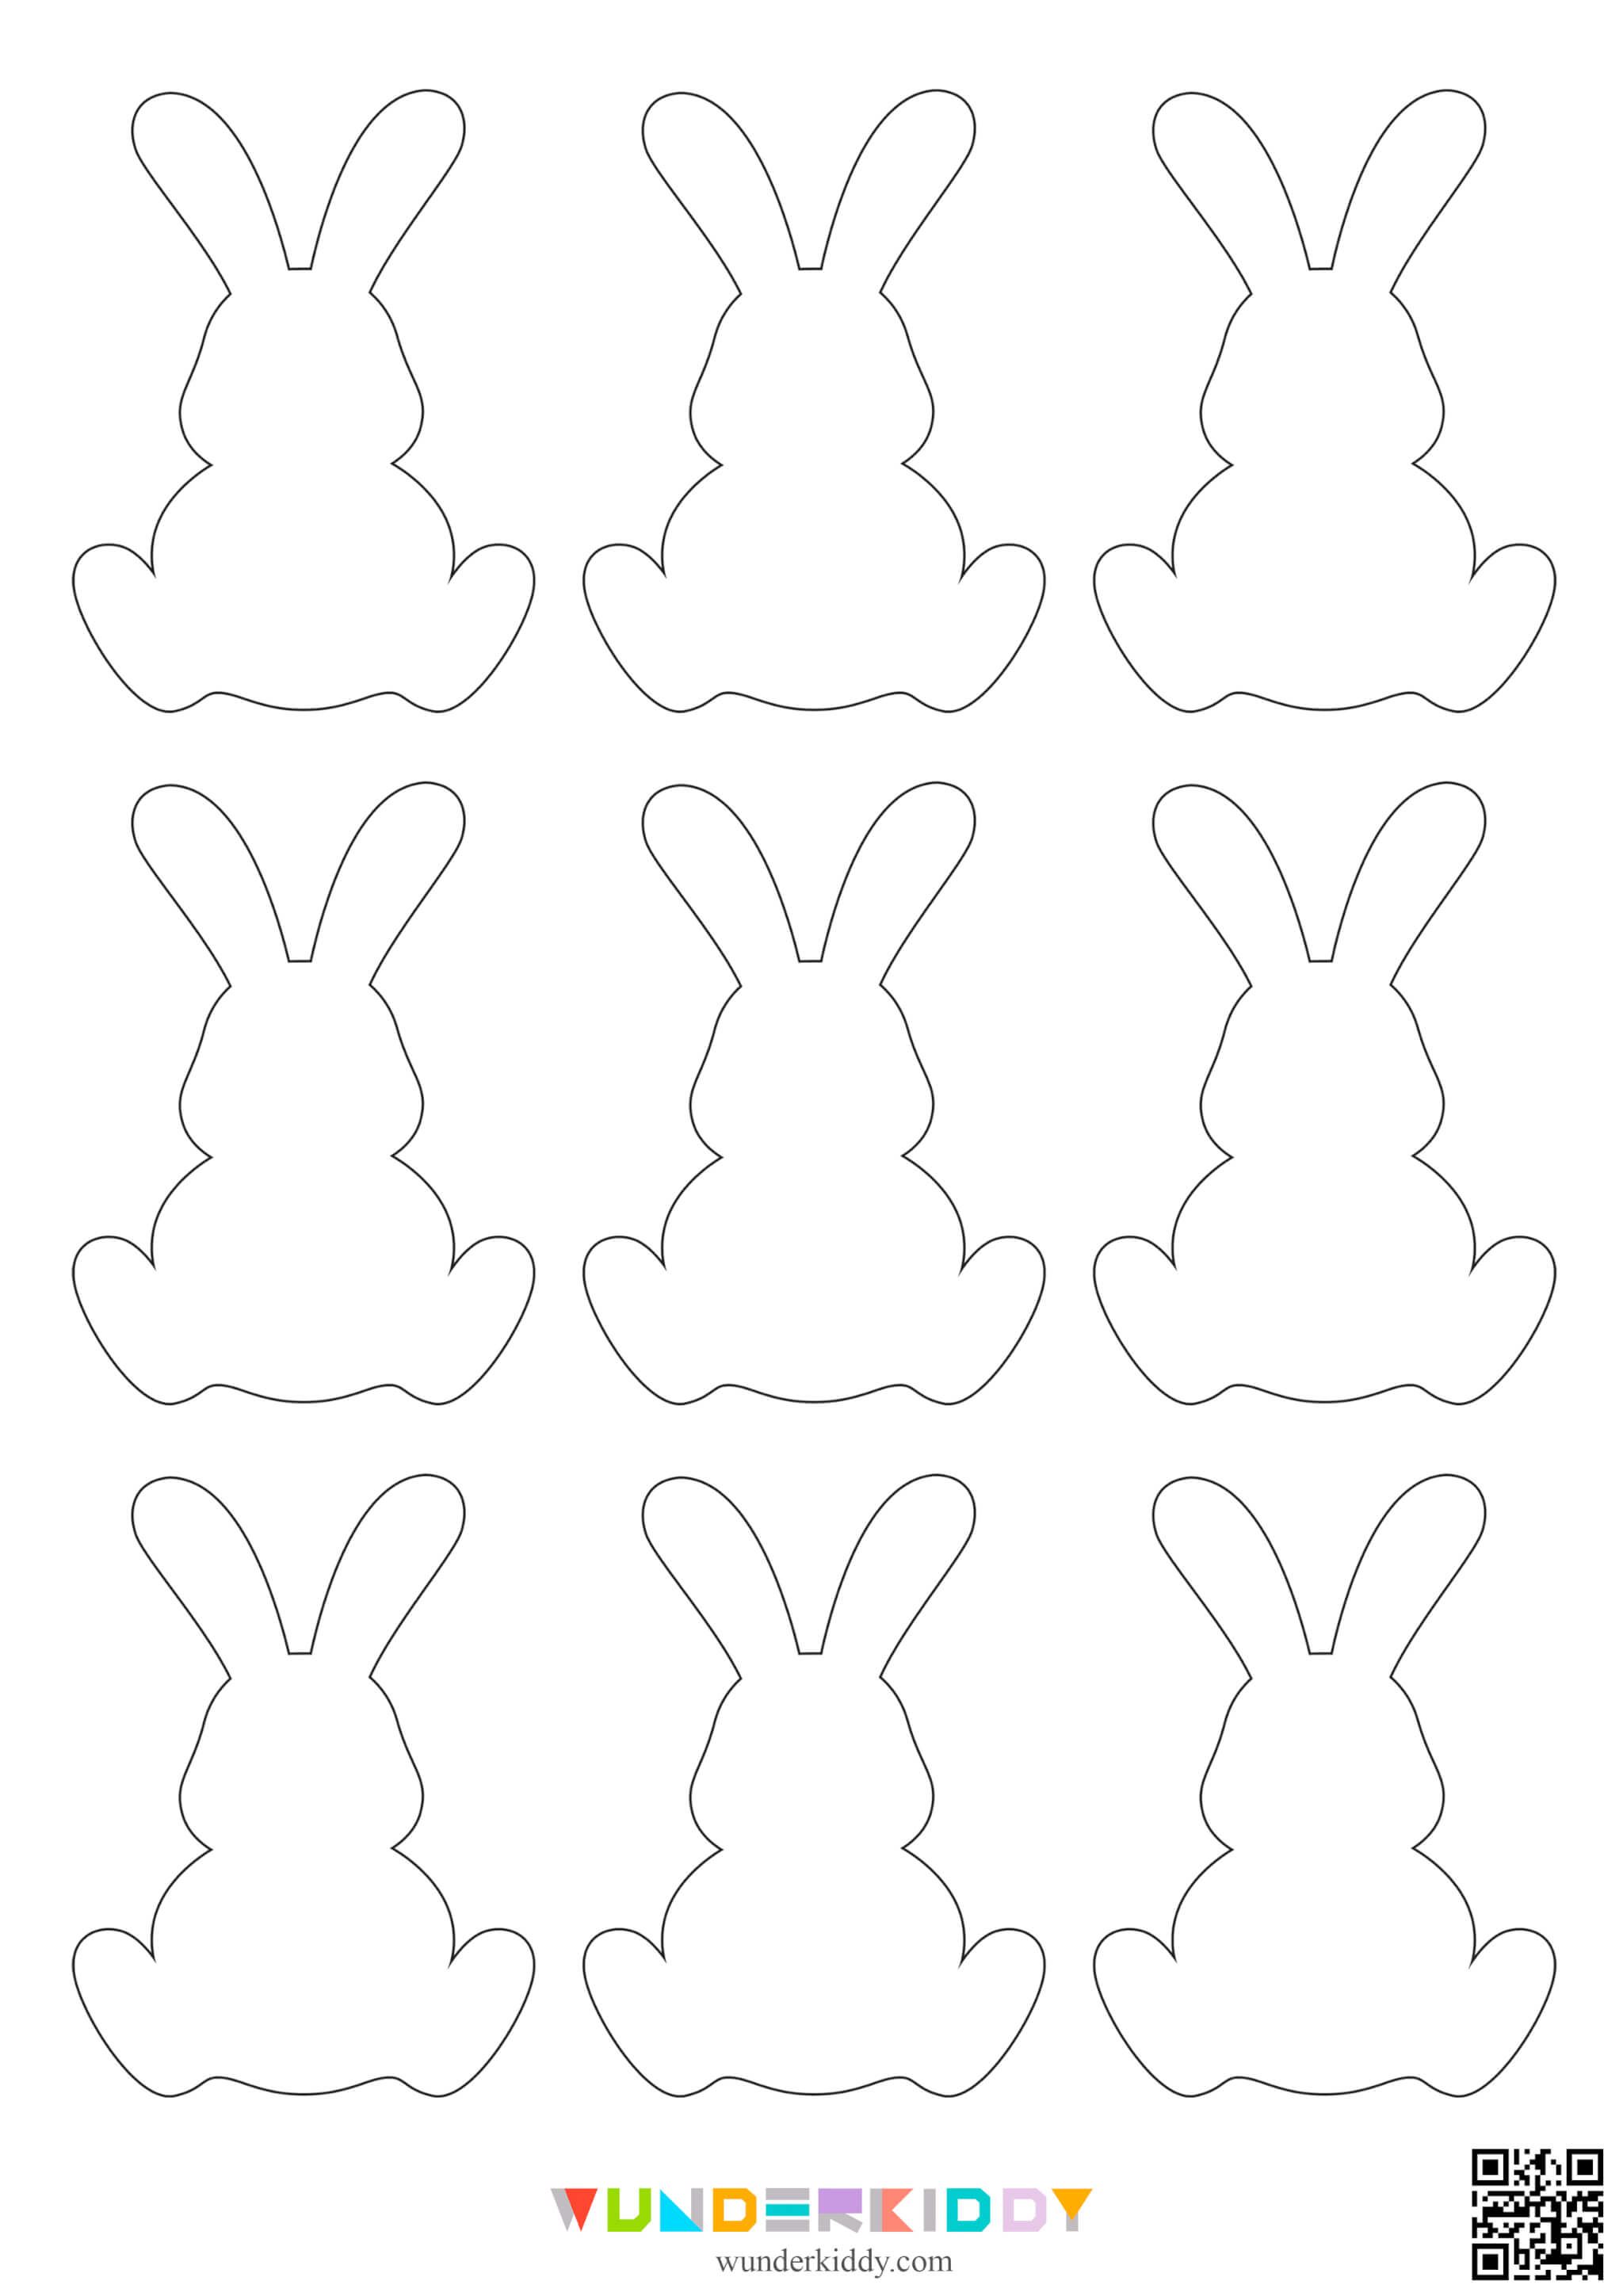 Printable Easter Bunny Template - Image 3